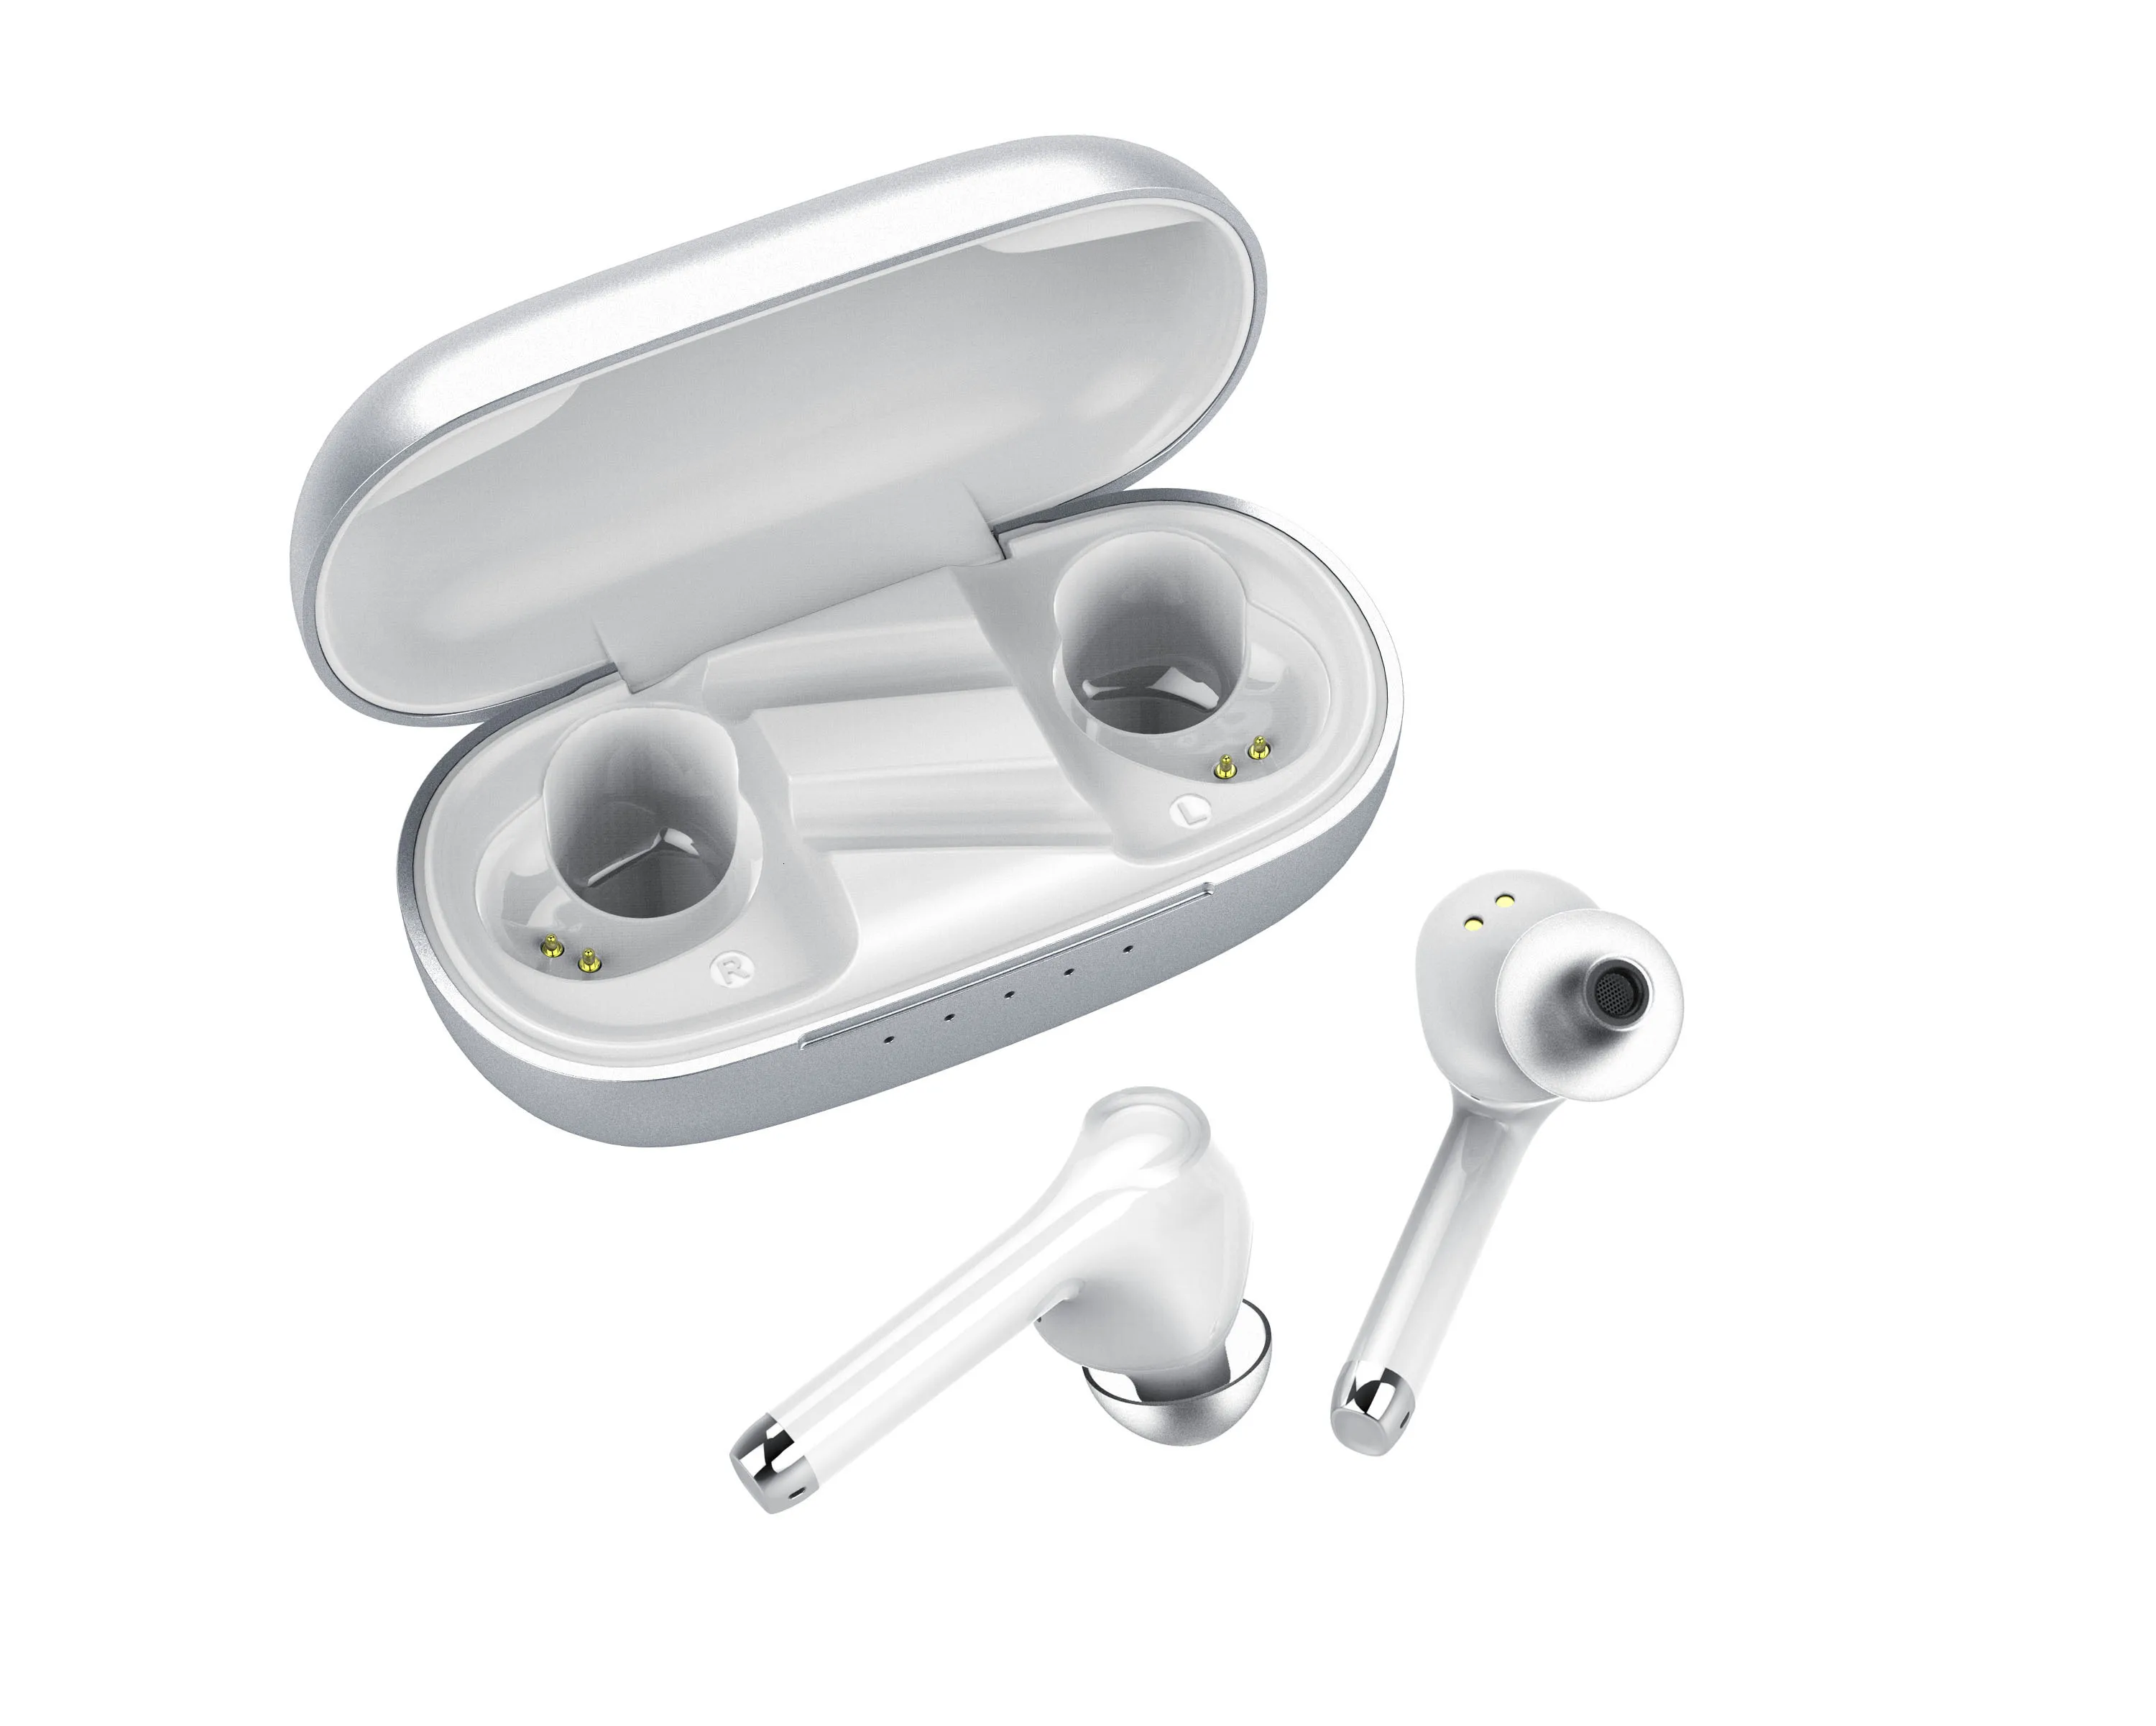 Yinyoo Q70 Bluetooth 5,0 TWS беспроводные наушники Blutooth с шумоподавлением наушники с громкой связью в ухо спортивные вкладыши